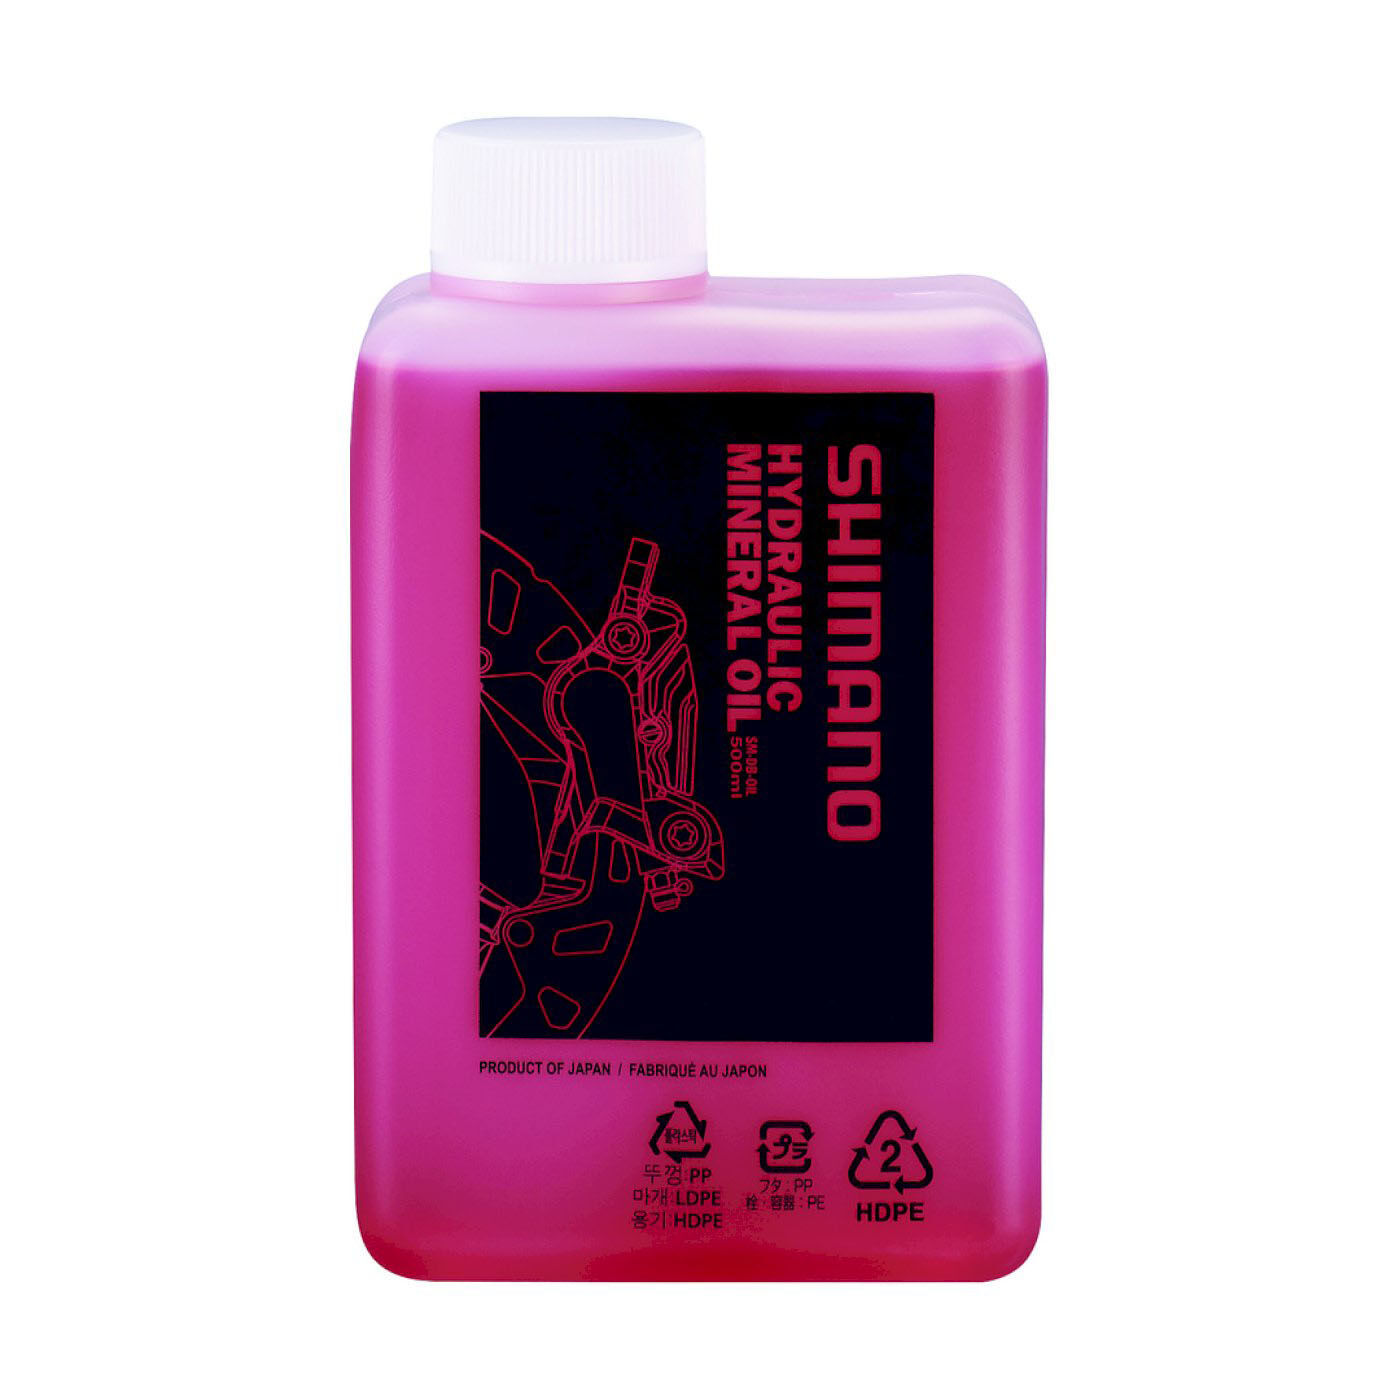 Shimano Flasche Mineralöl für Scheibenbremsen 500ml